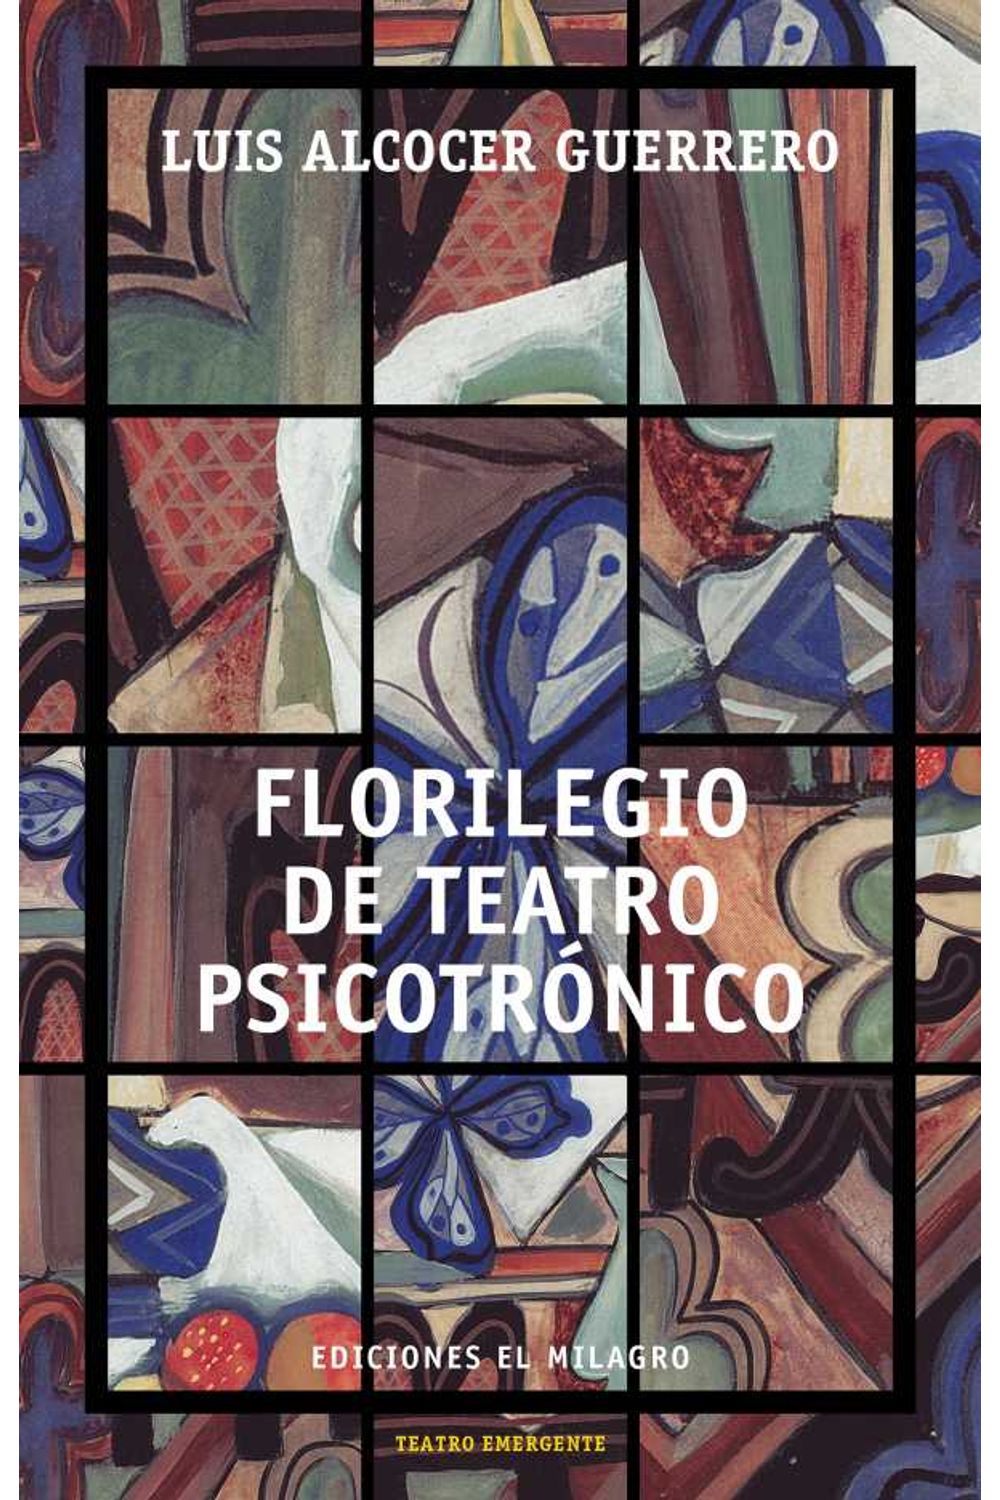 bw-florilegio-de-teatro-psicotroacutenico-ediciones-el-milagro-9786074090642